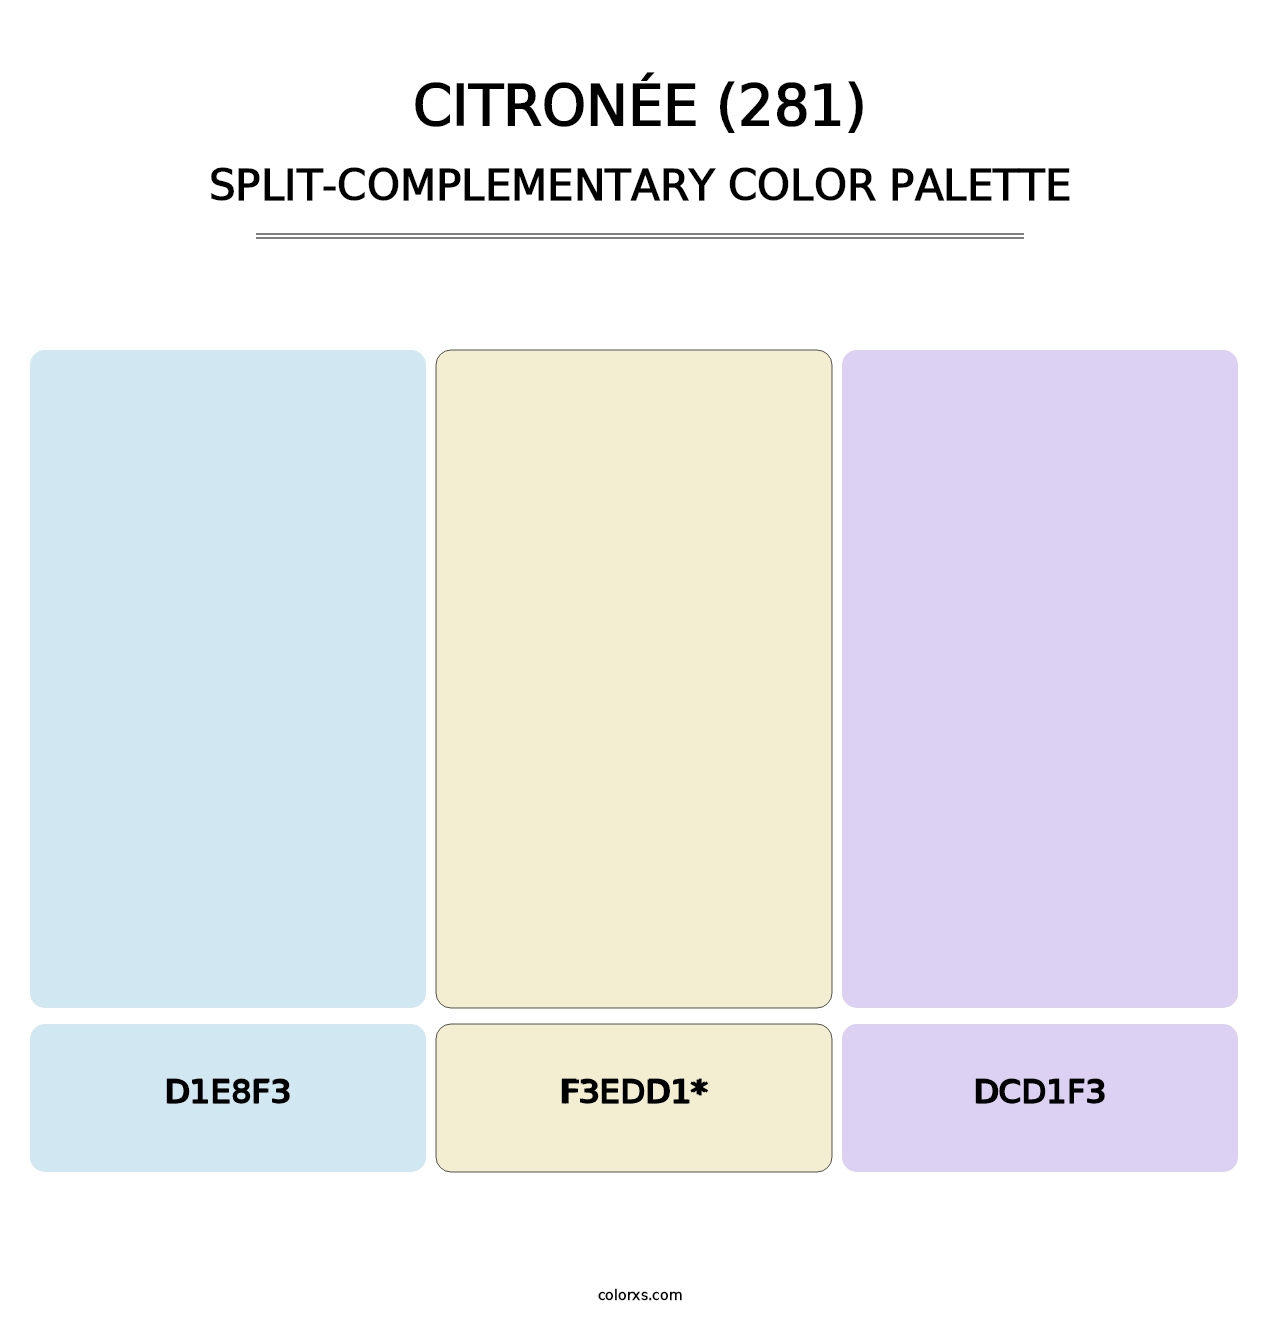 Citronée (281) - Split-Complementary Color Palette